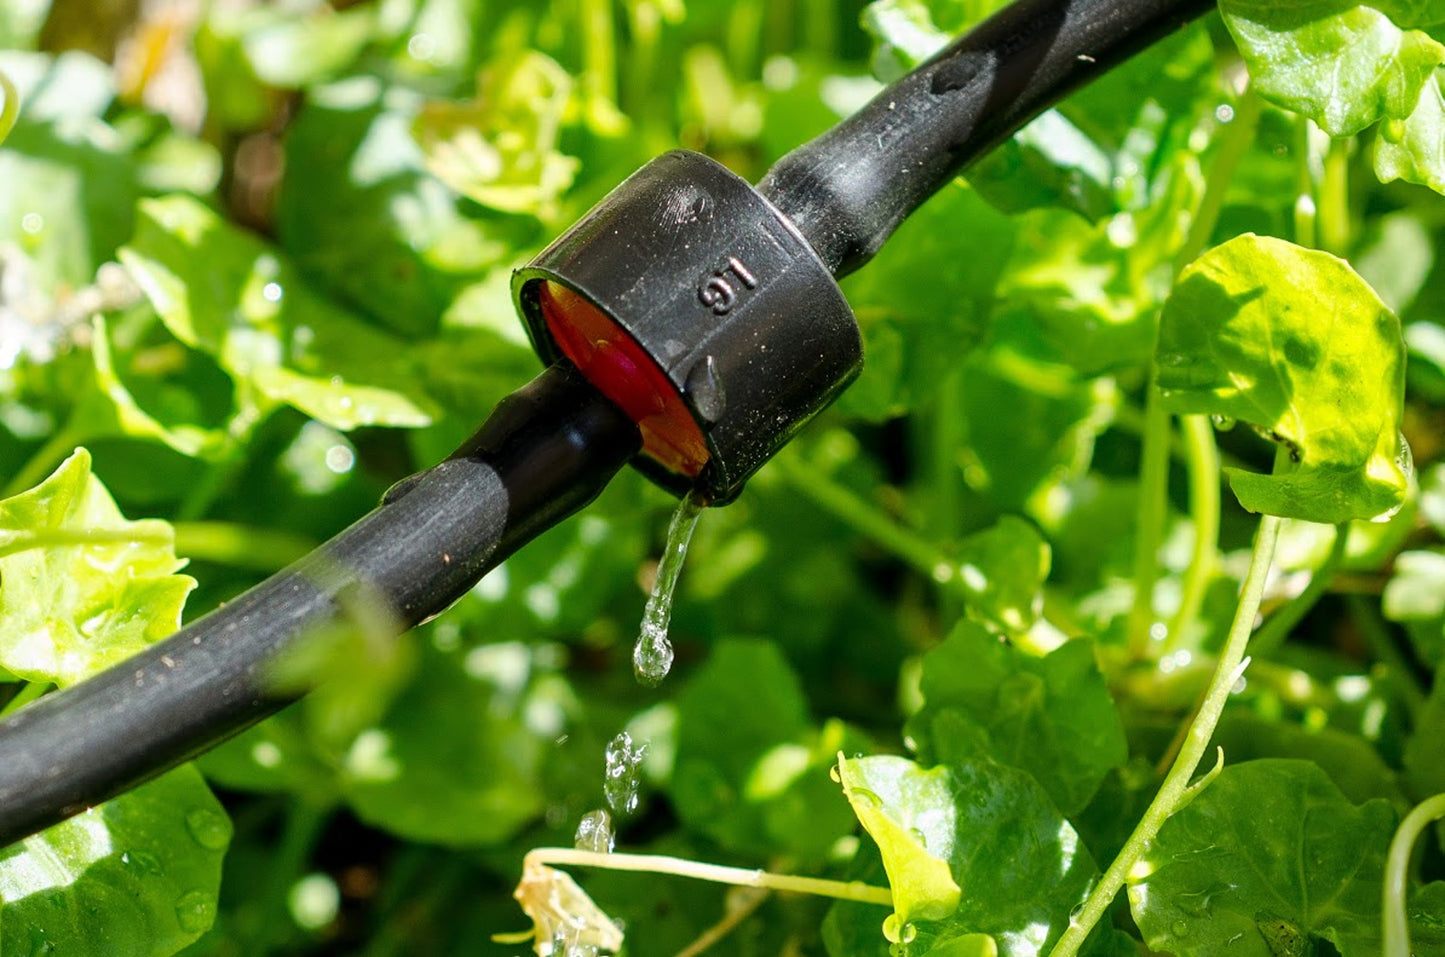  Riverstone Genesis Drip Irrigation Water Kit | Drip Irrigation | Garden Forests